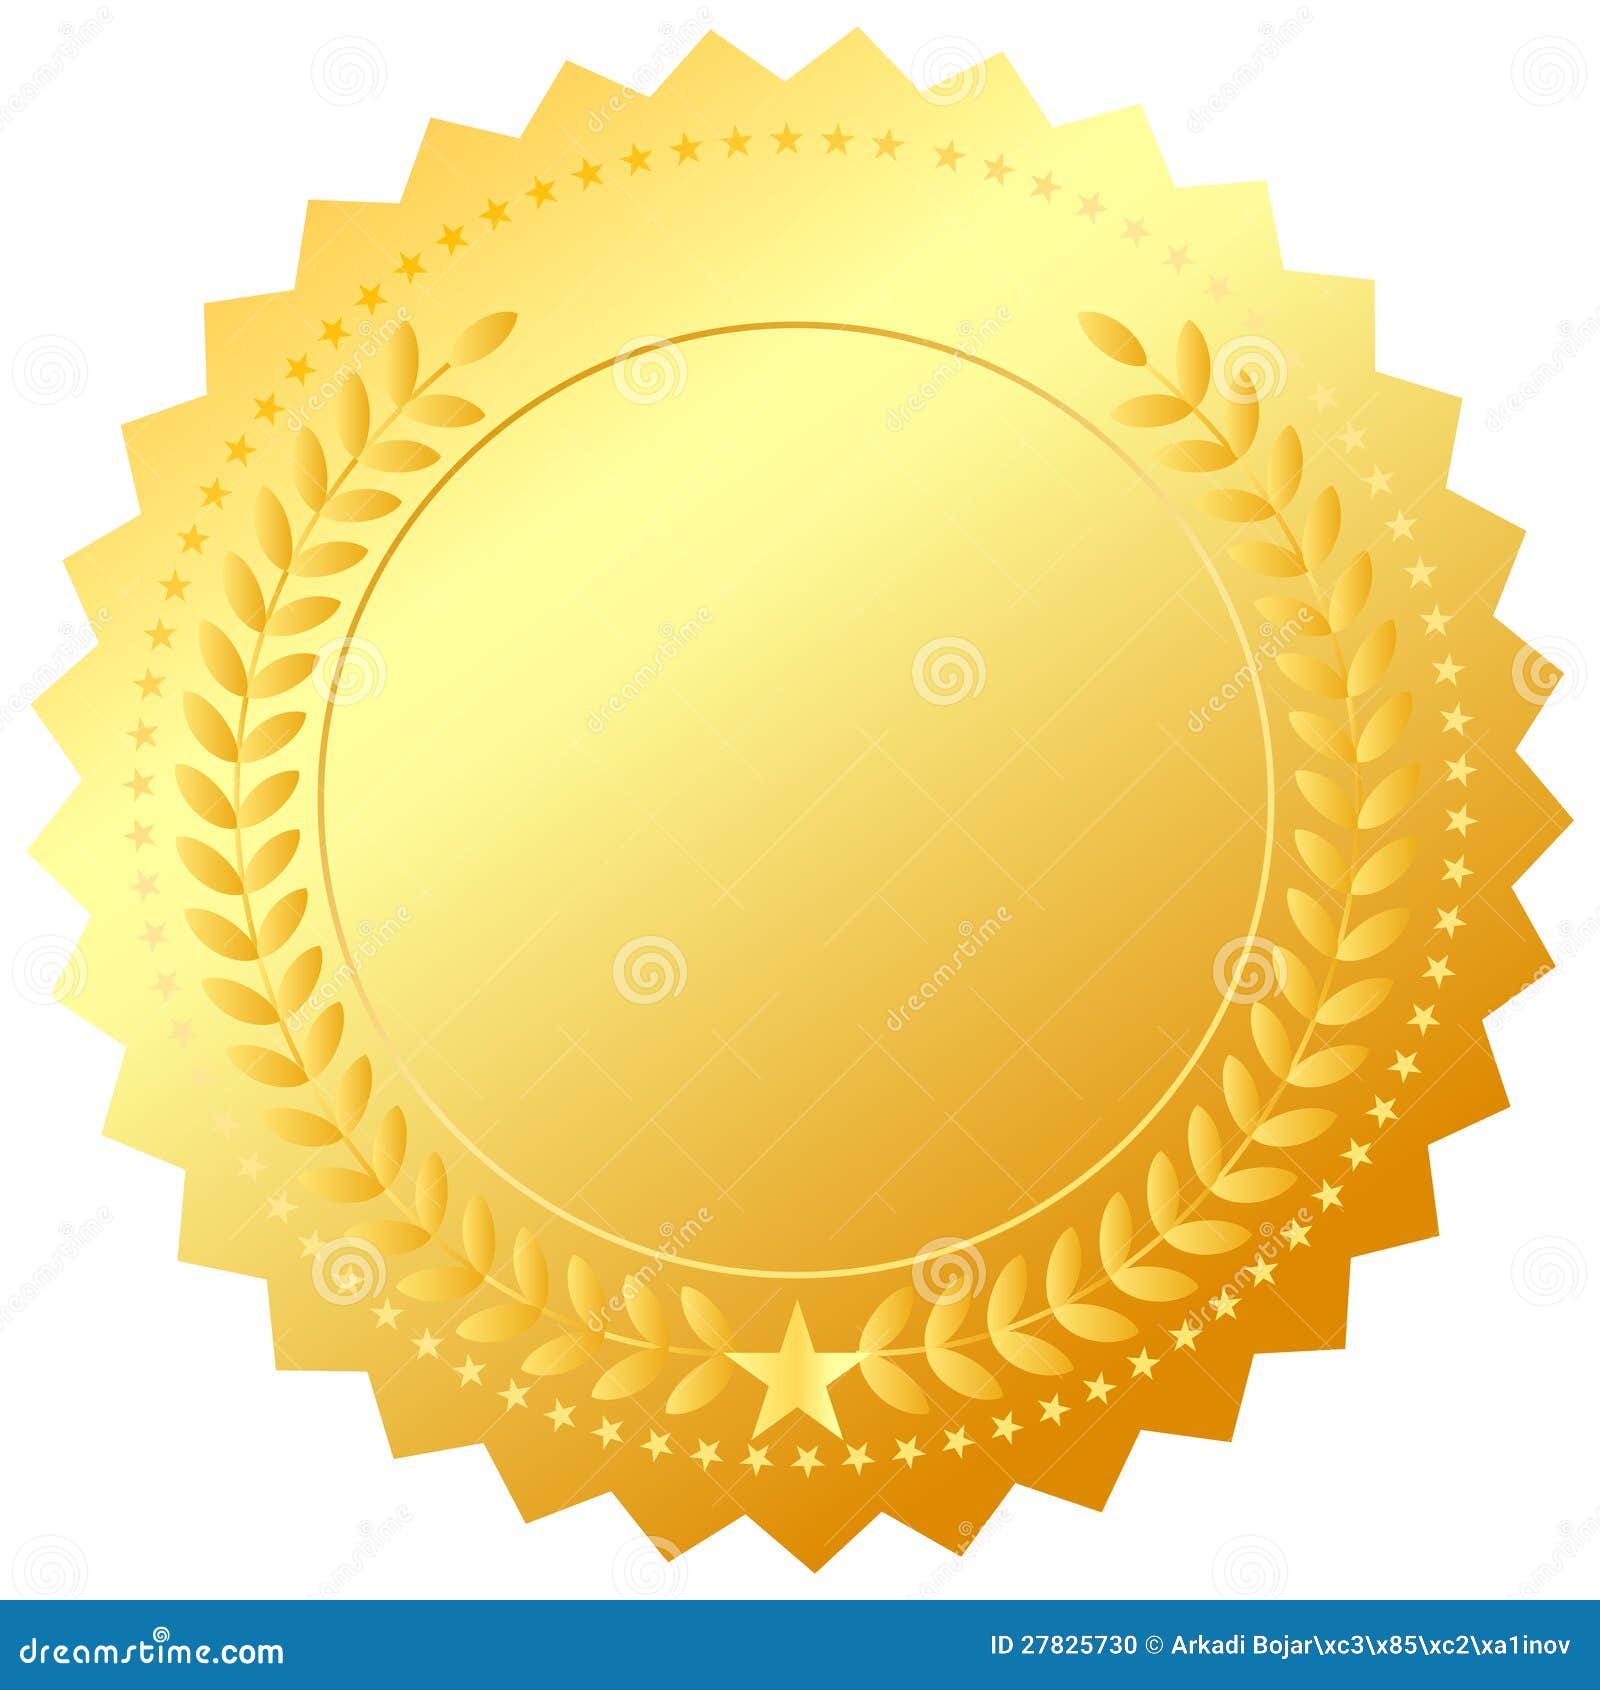 golden award medal